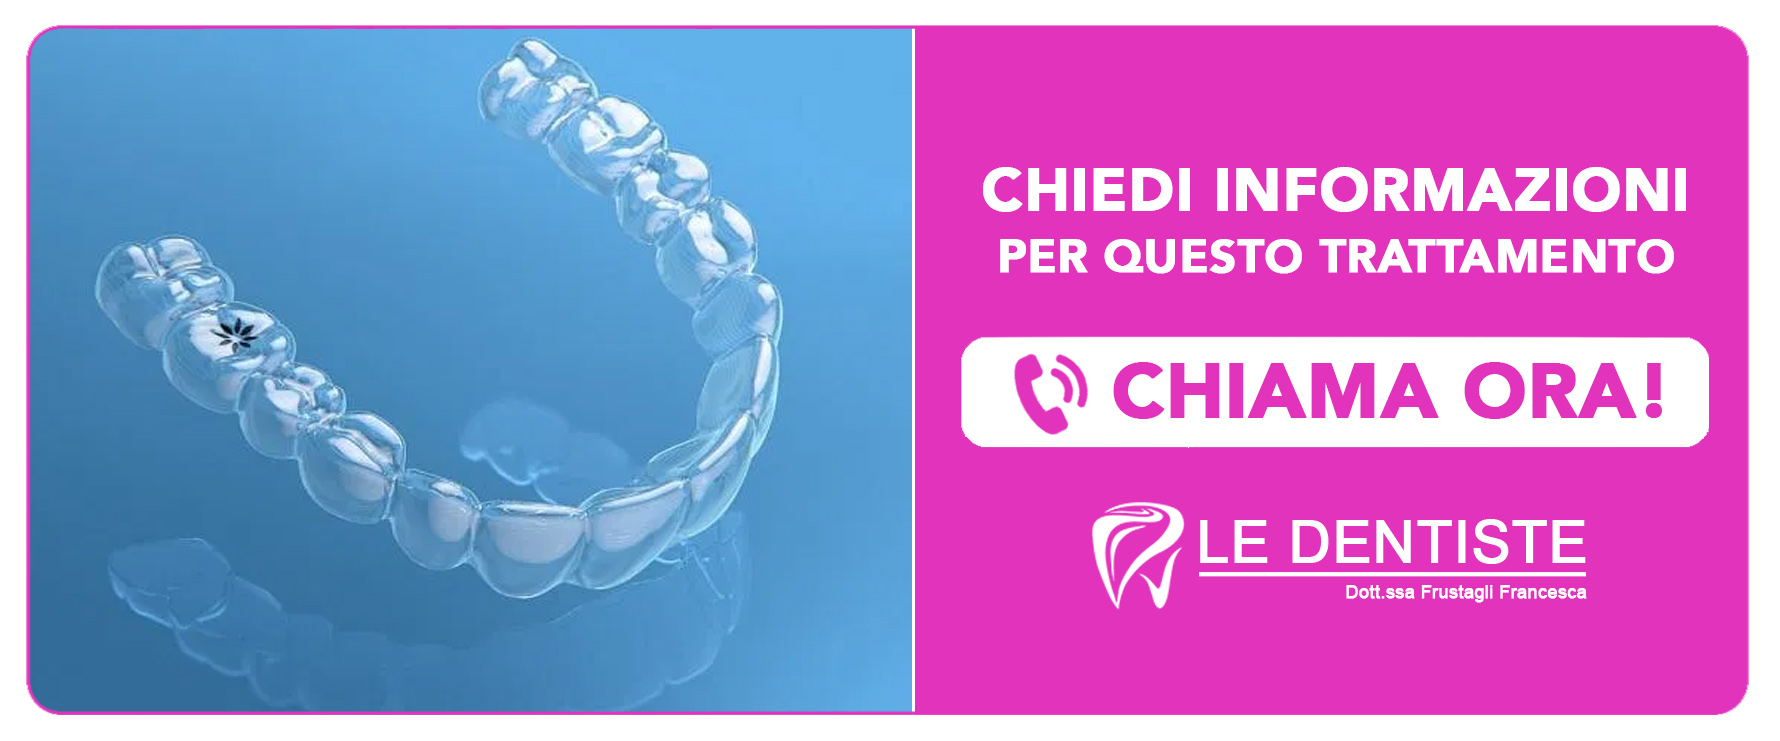 ortodonzia-invisalign Cisliano (Milano)